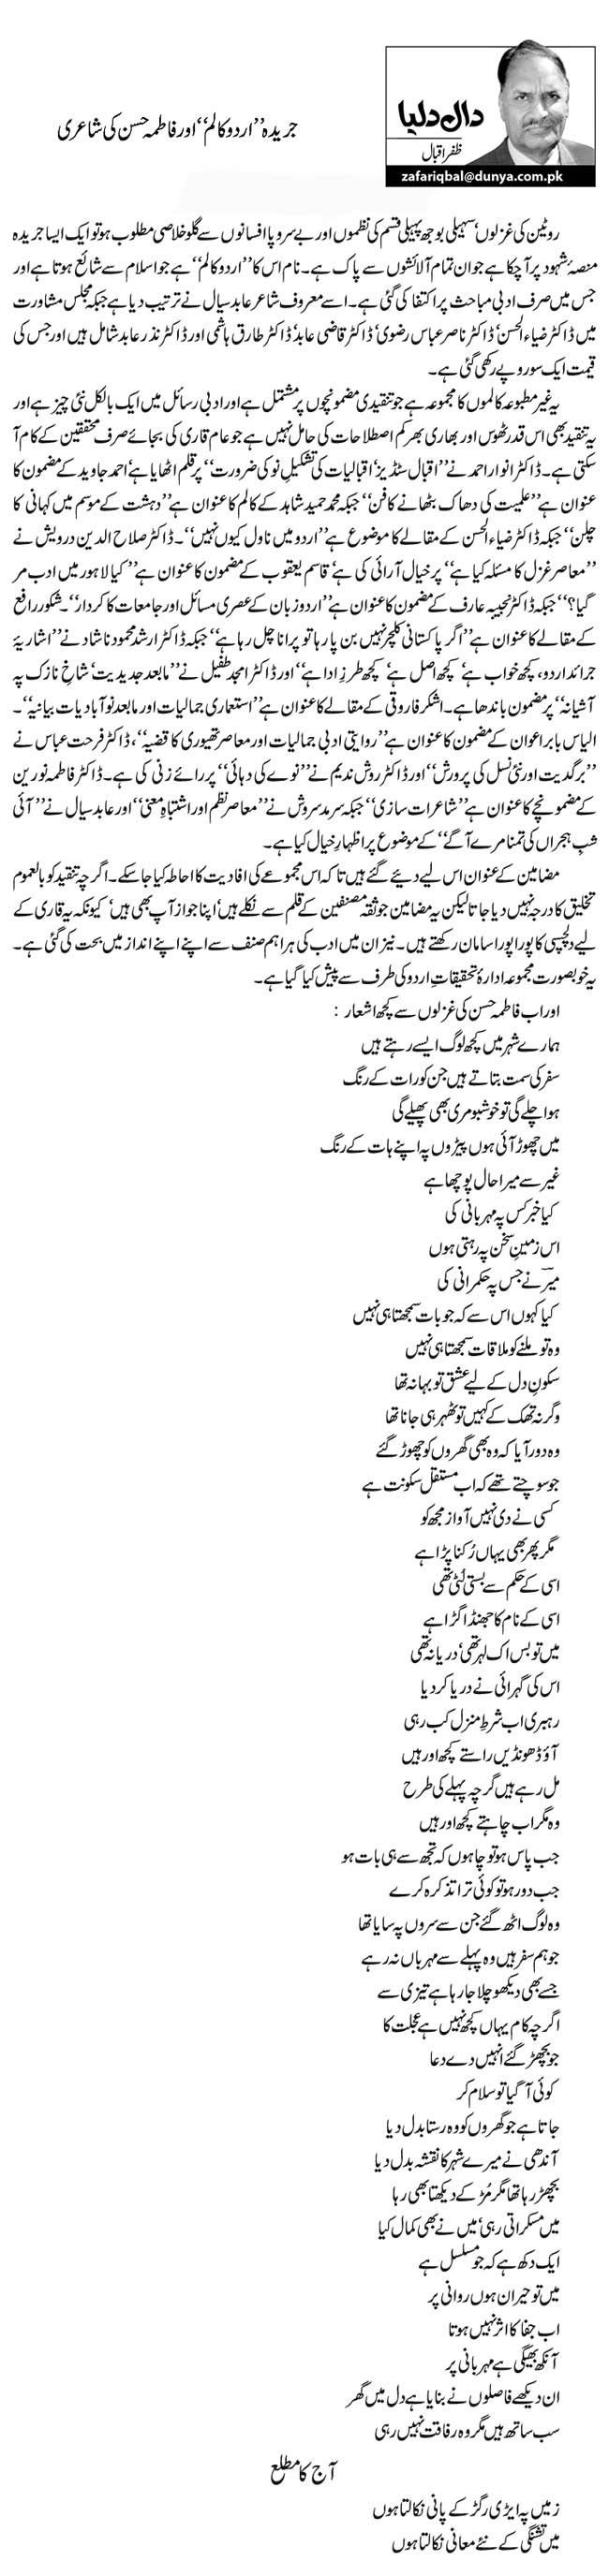 جریدہ ’’اردو کالم‘‘ اور فاطمہ حسن کی شاعری   